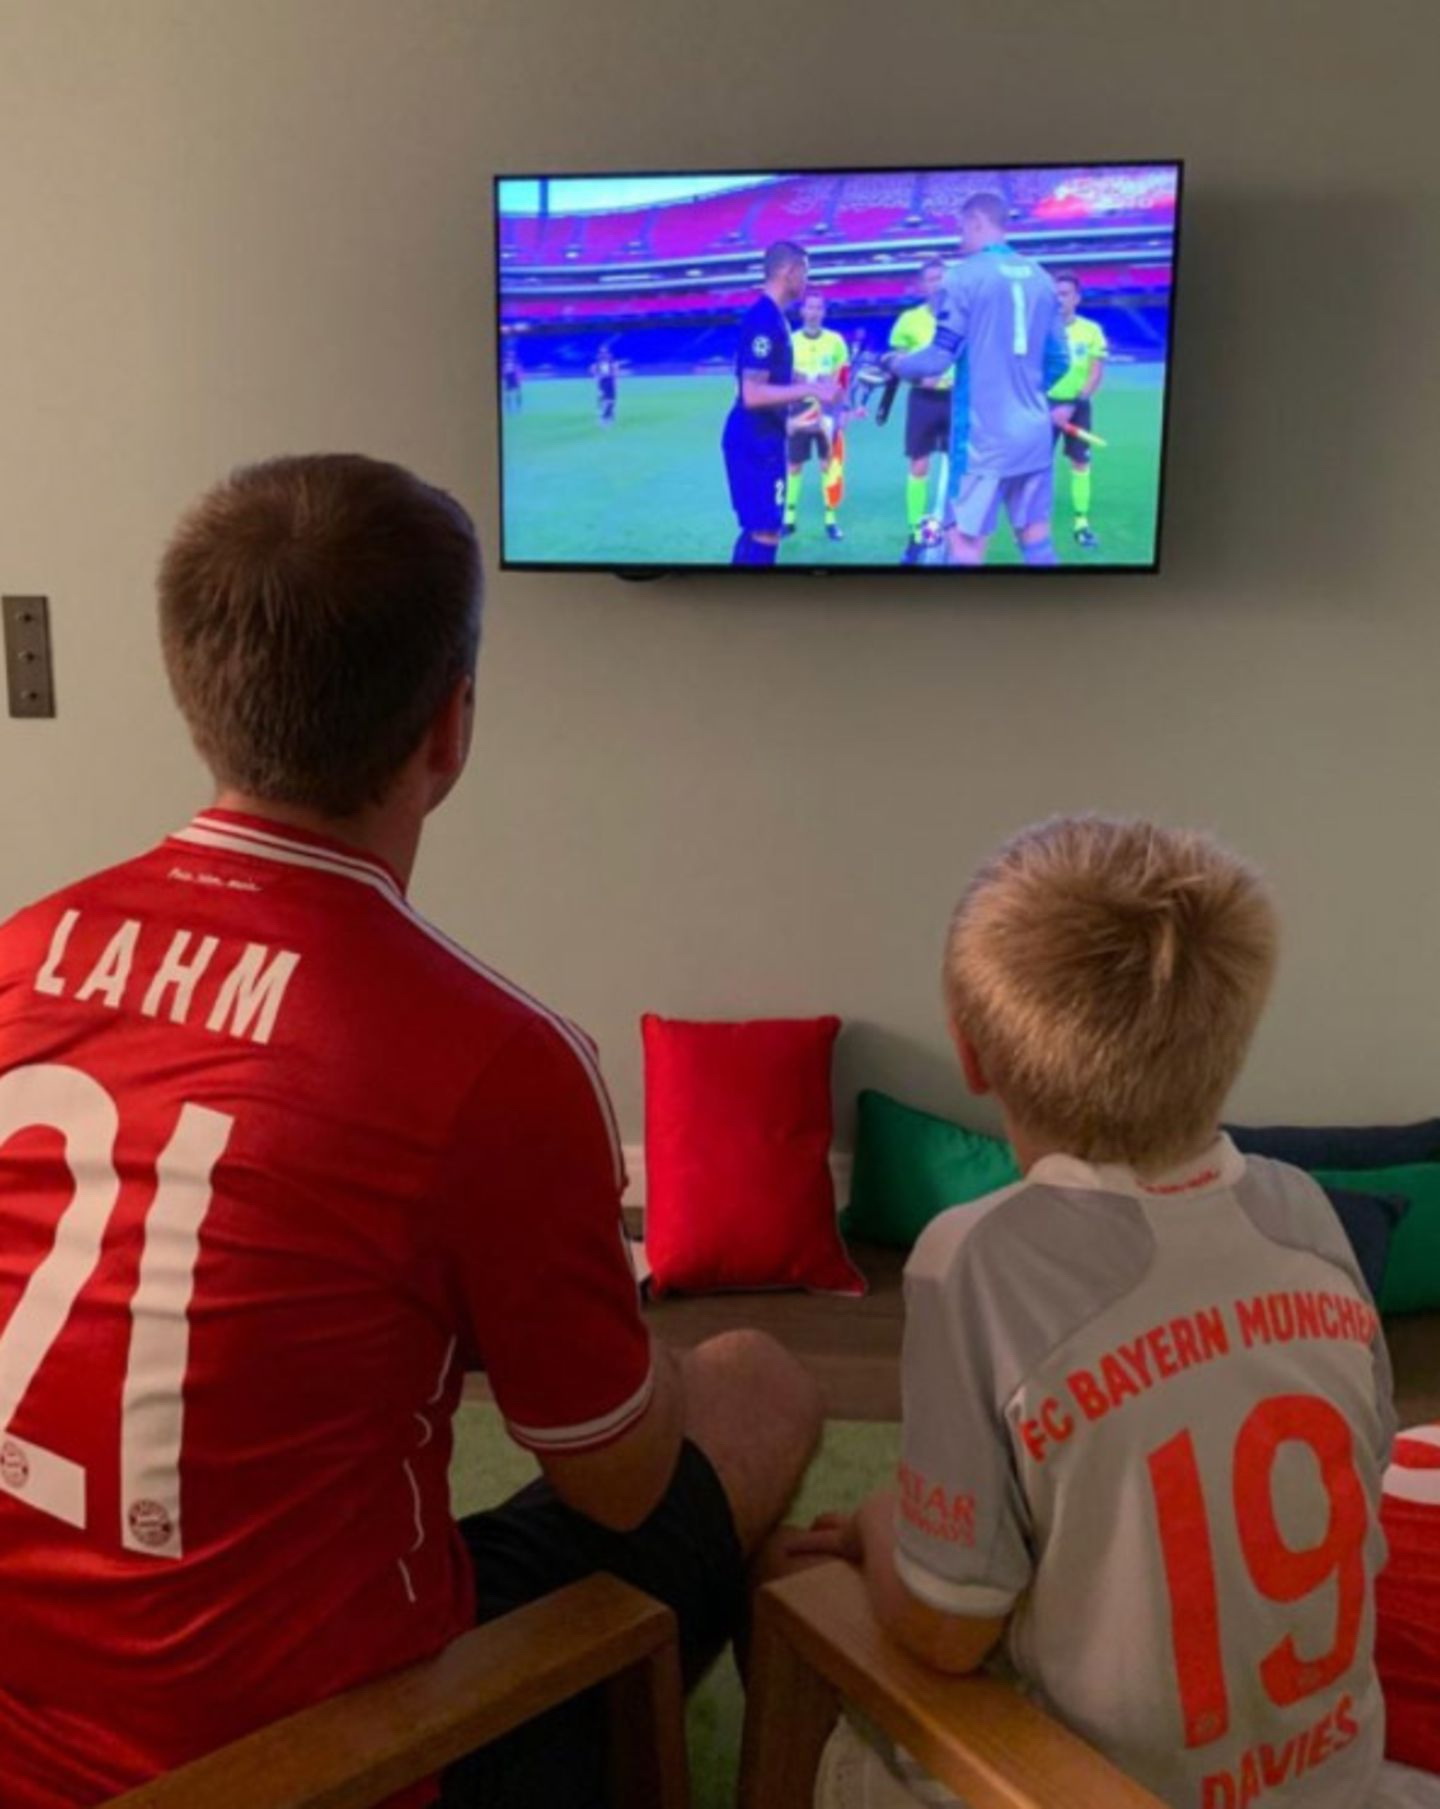 Lahm cùng con trai ngồi xem trận chung kết Champions League giữa Bayern và Paris Saint-Germain.